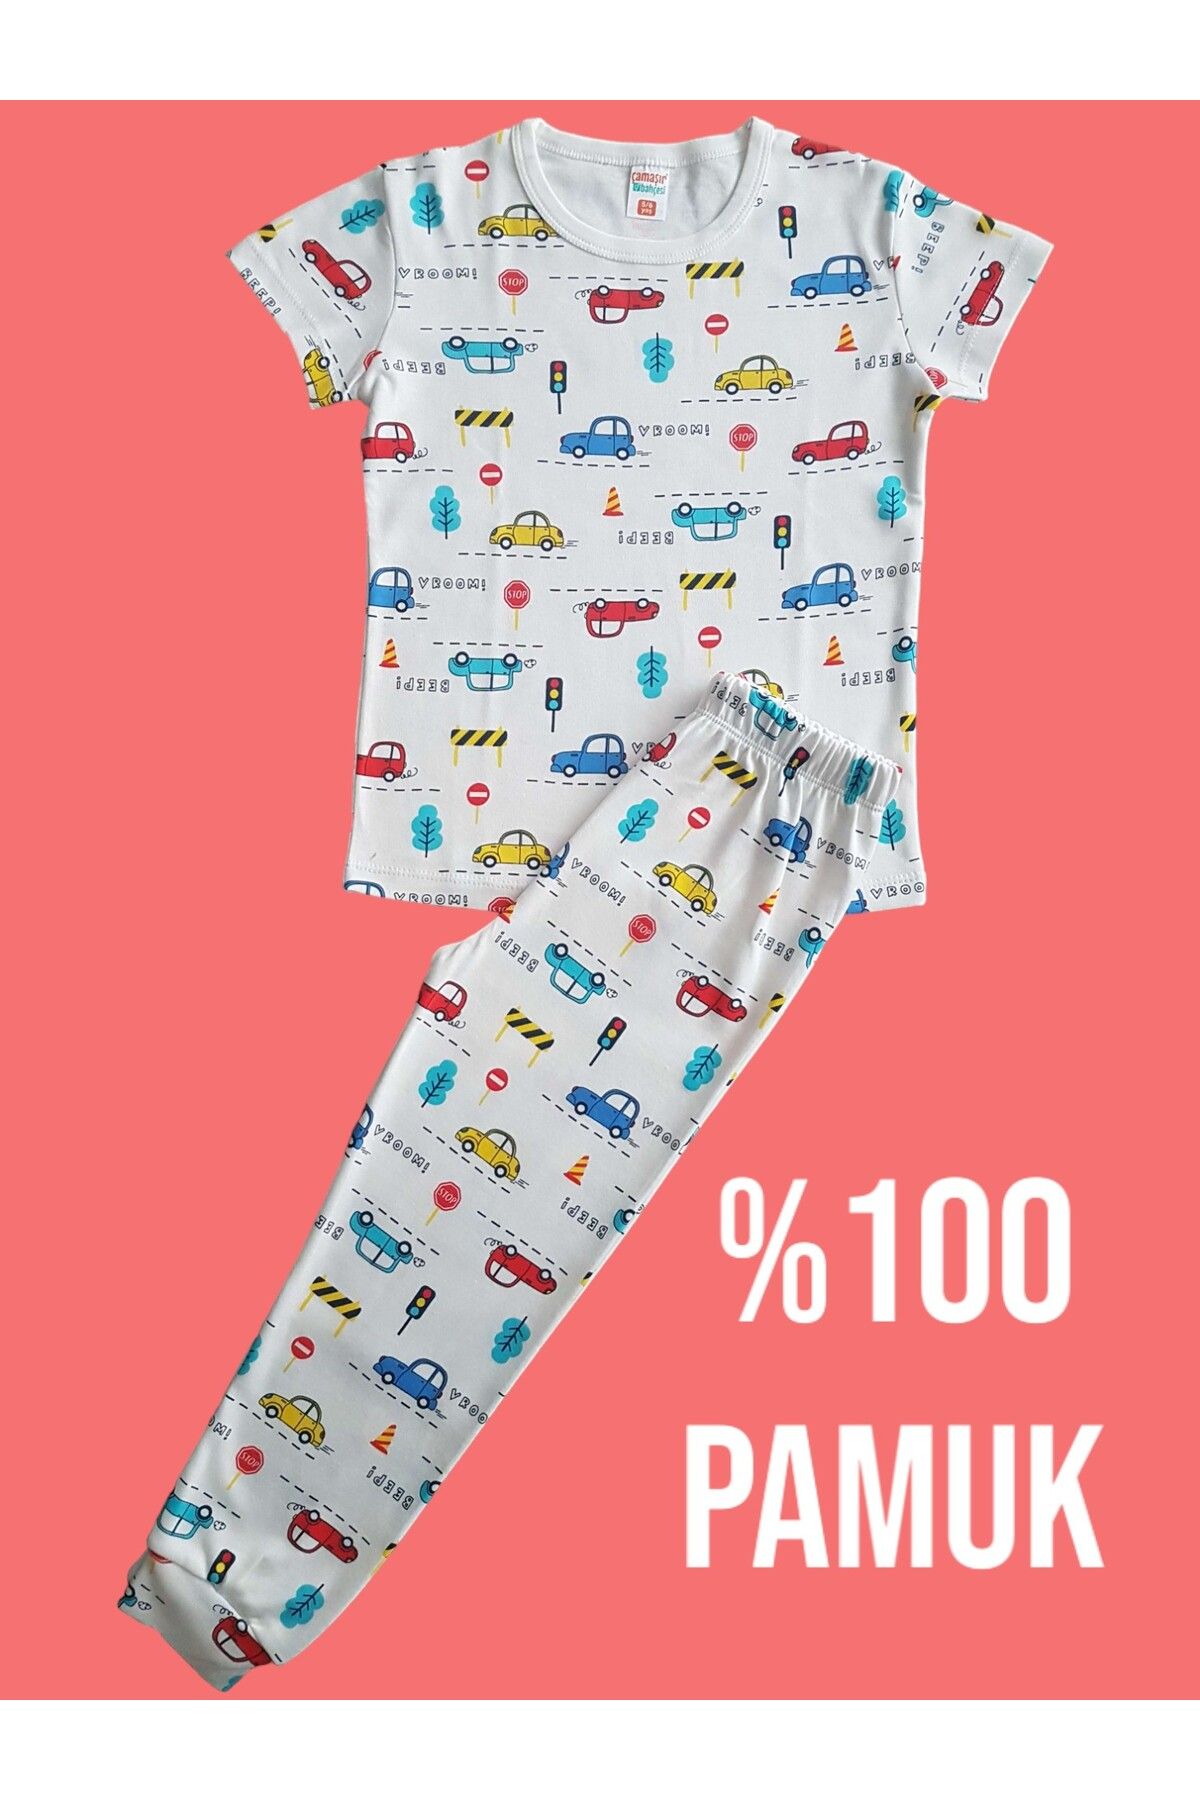 Çamaşır Bahçesi Kısa Kollu Desenli Çocuk Pijama Takım #baskılıçocukpijamatakım #arabadesenlipijama #çamaşırbahçesi